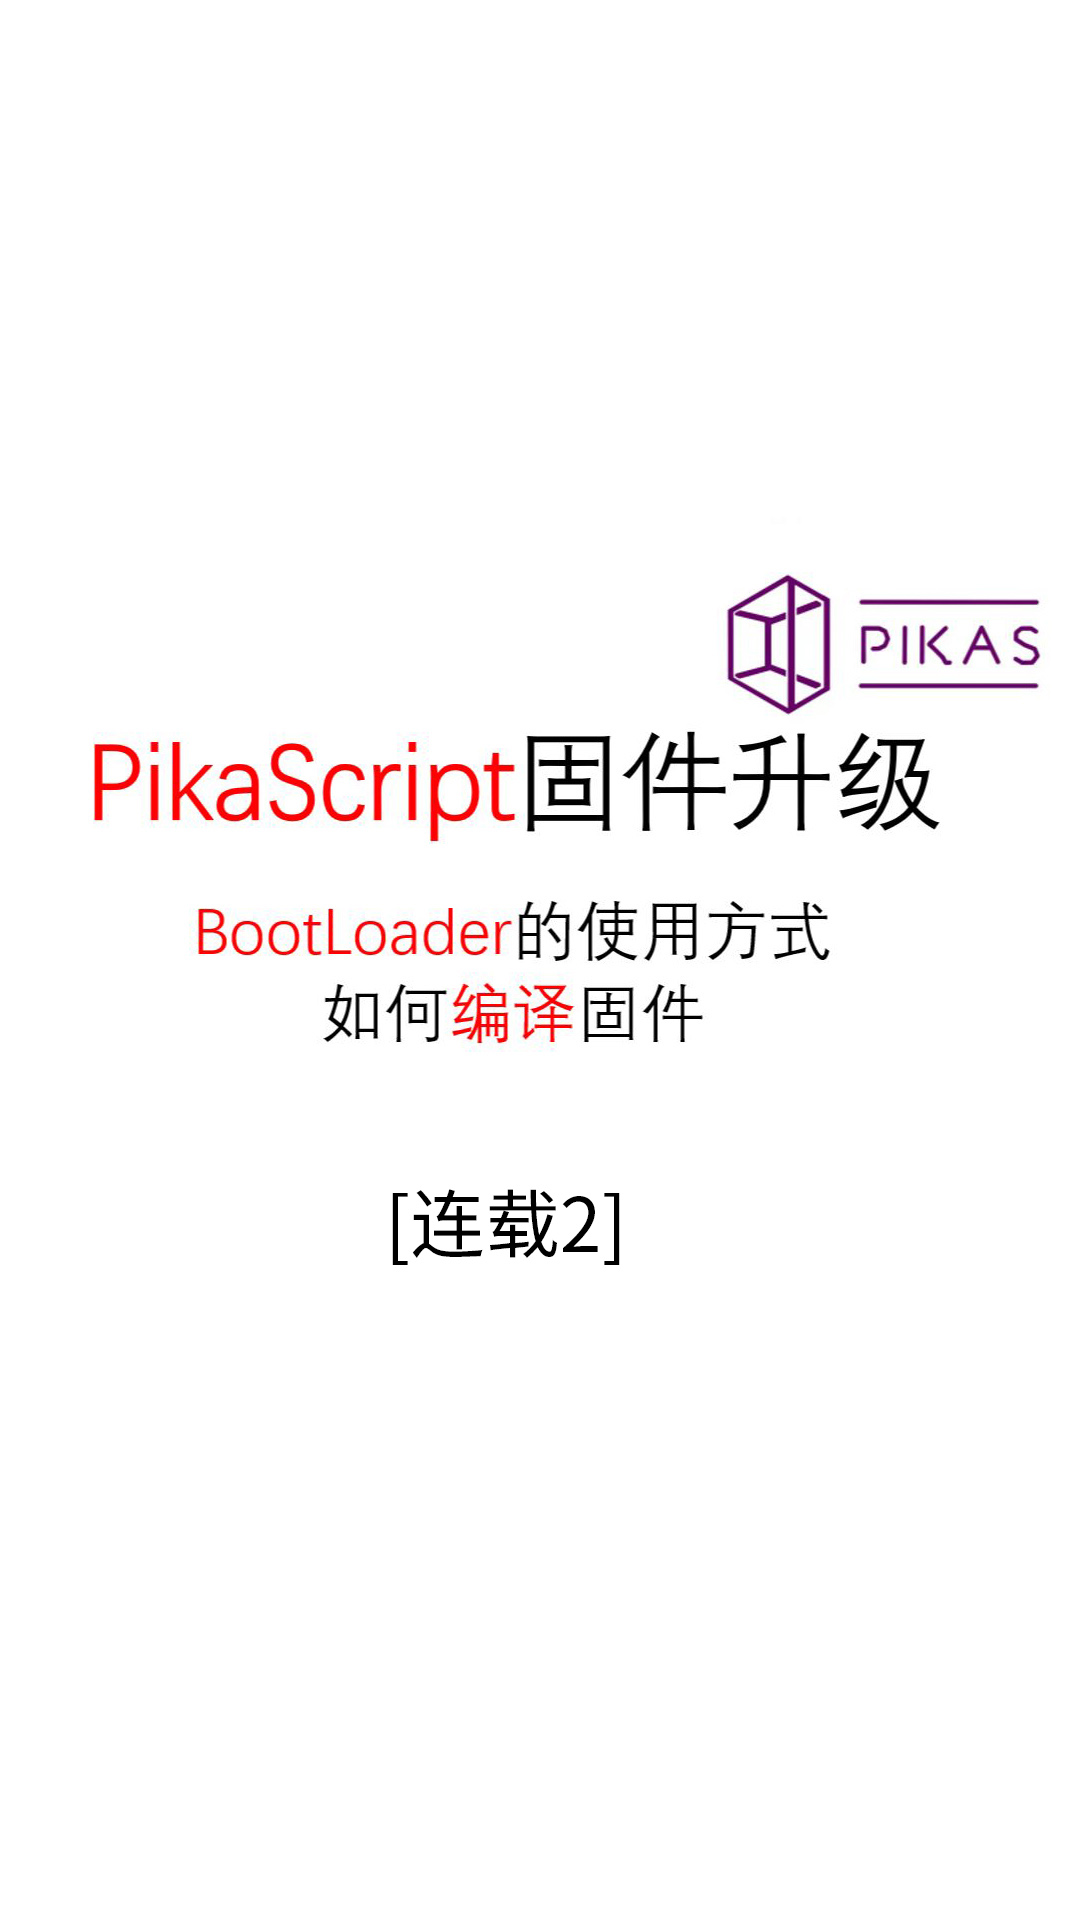 【连载02】固件升级--#Pika派开发板 手把手单片机python编程